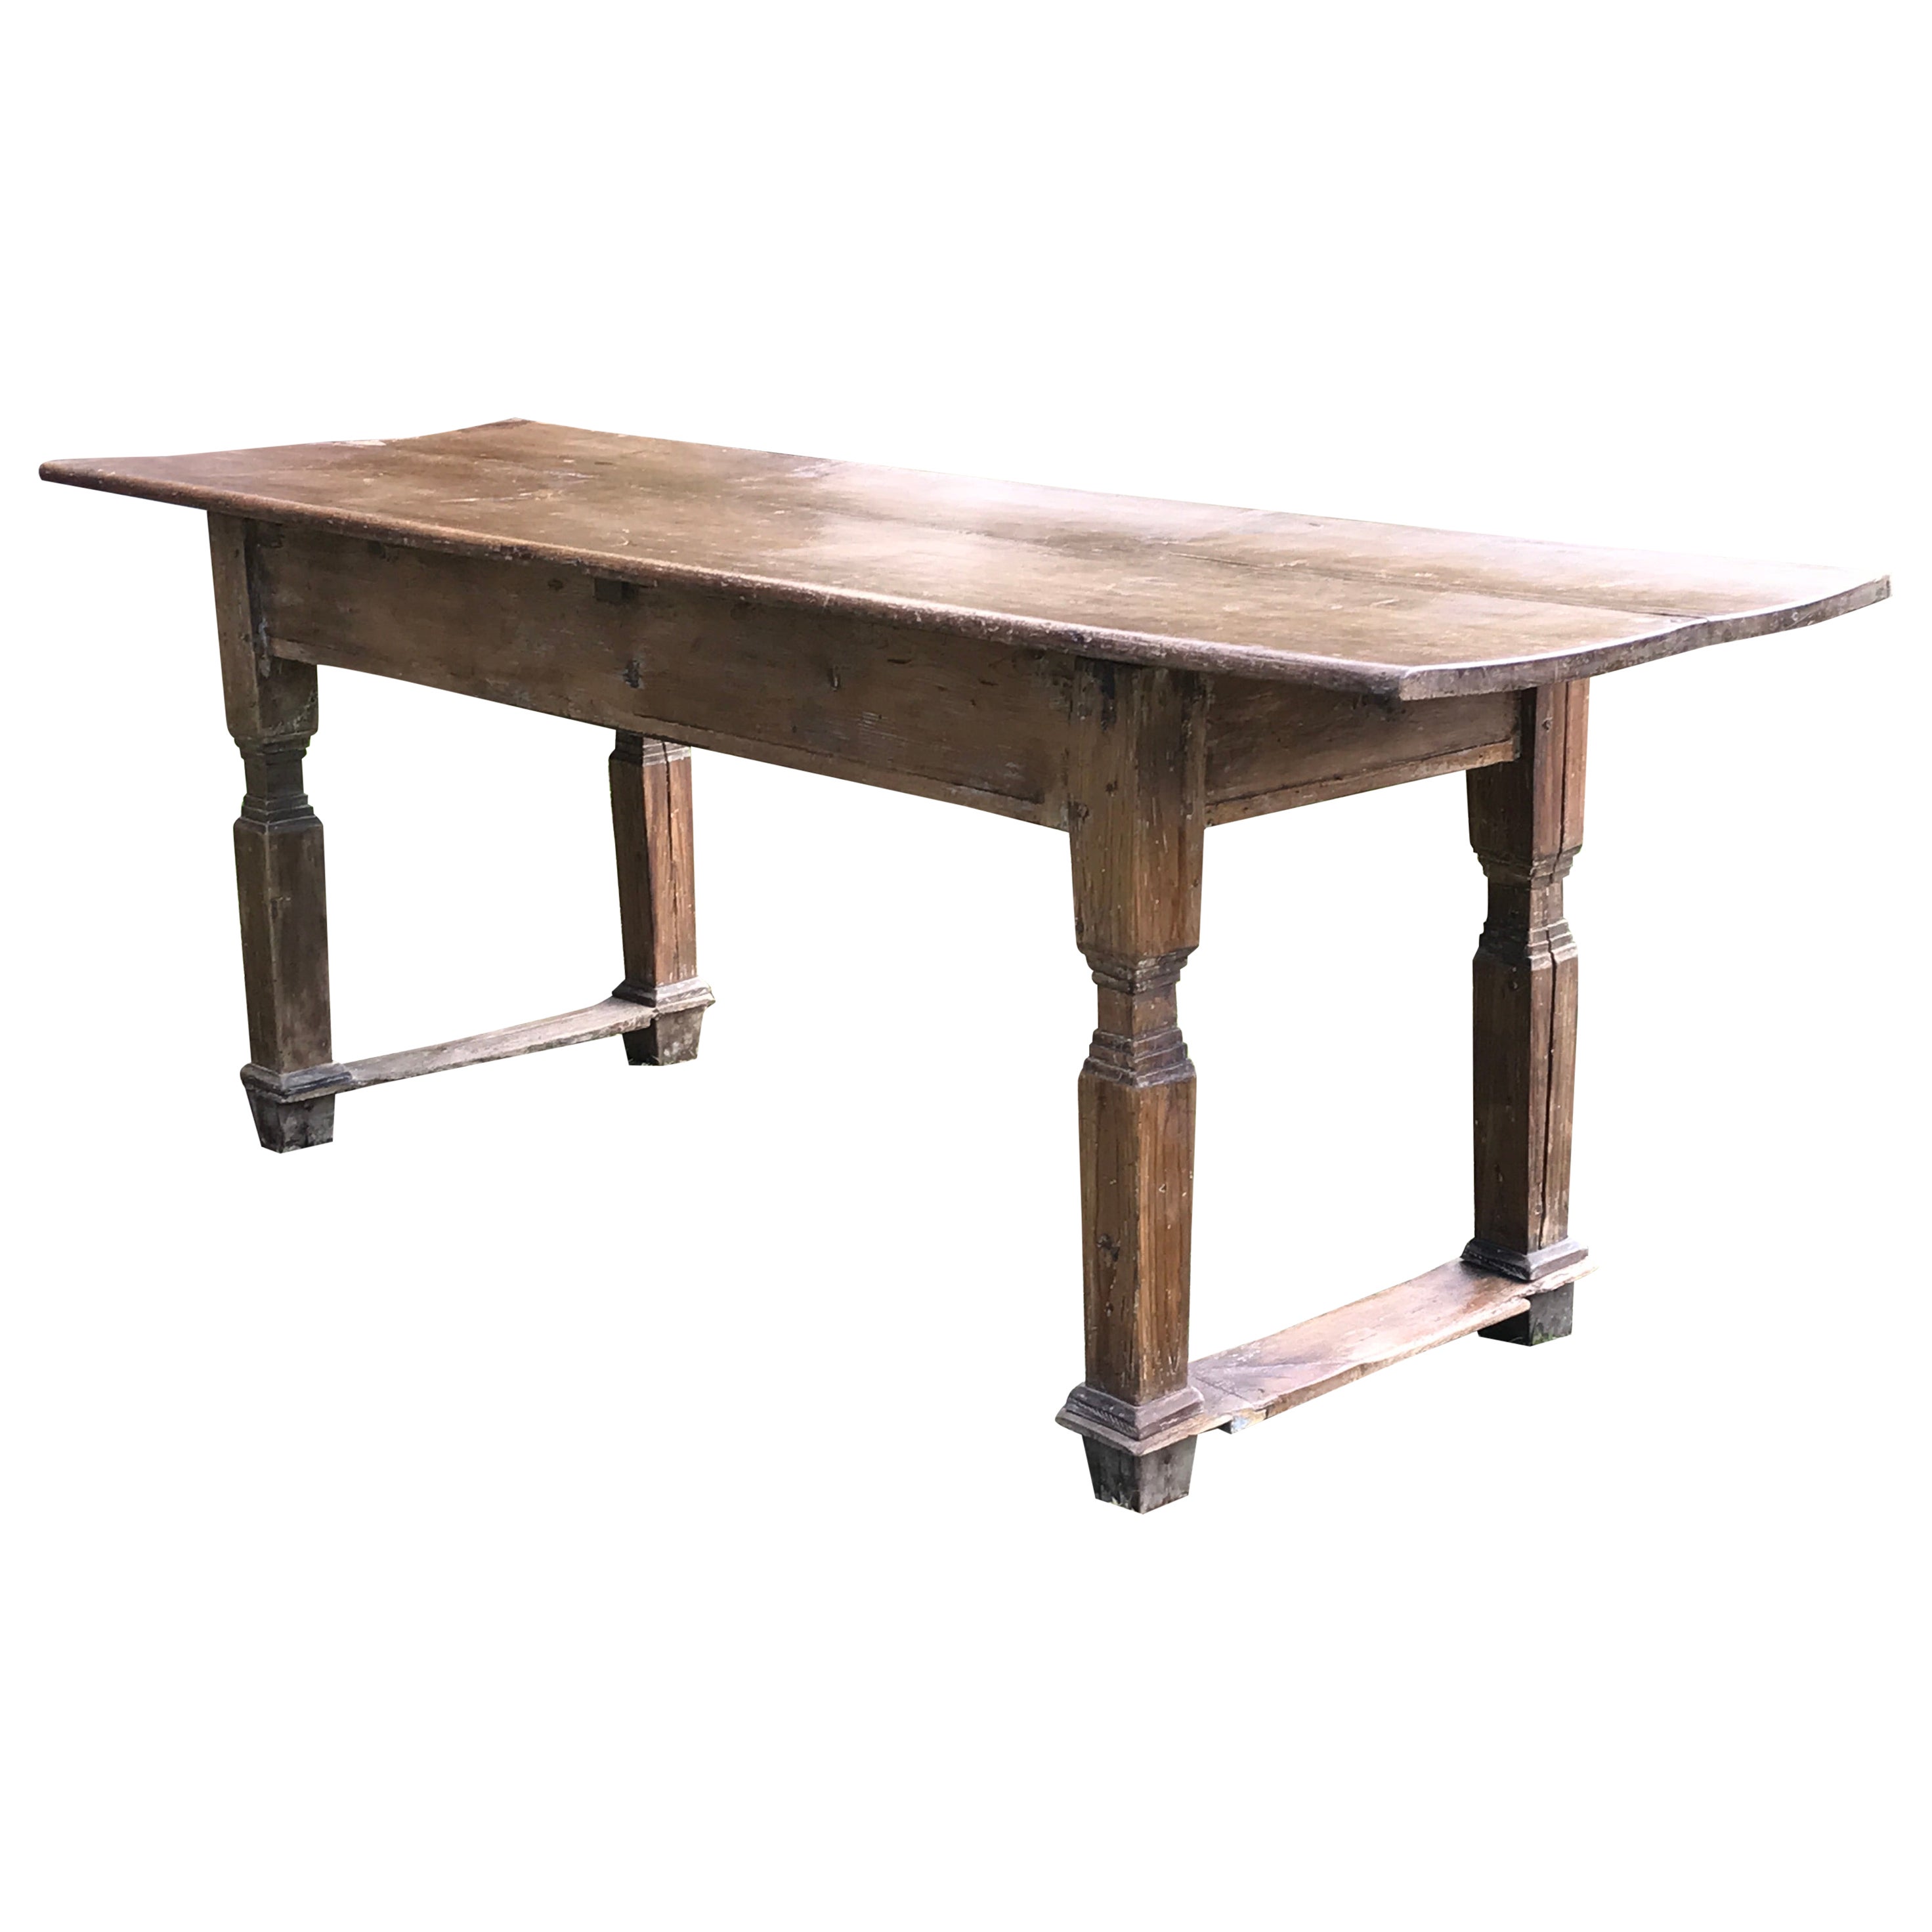 Table Pine Dining Desk Classical Leg Vernacular Folk 206cm 81"" or 6ft9"" long